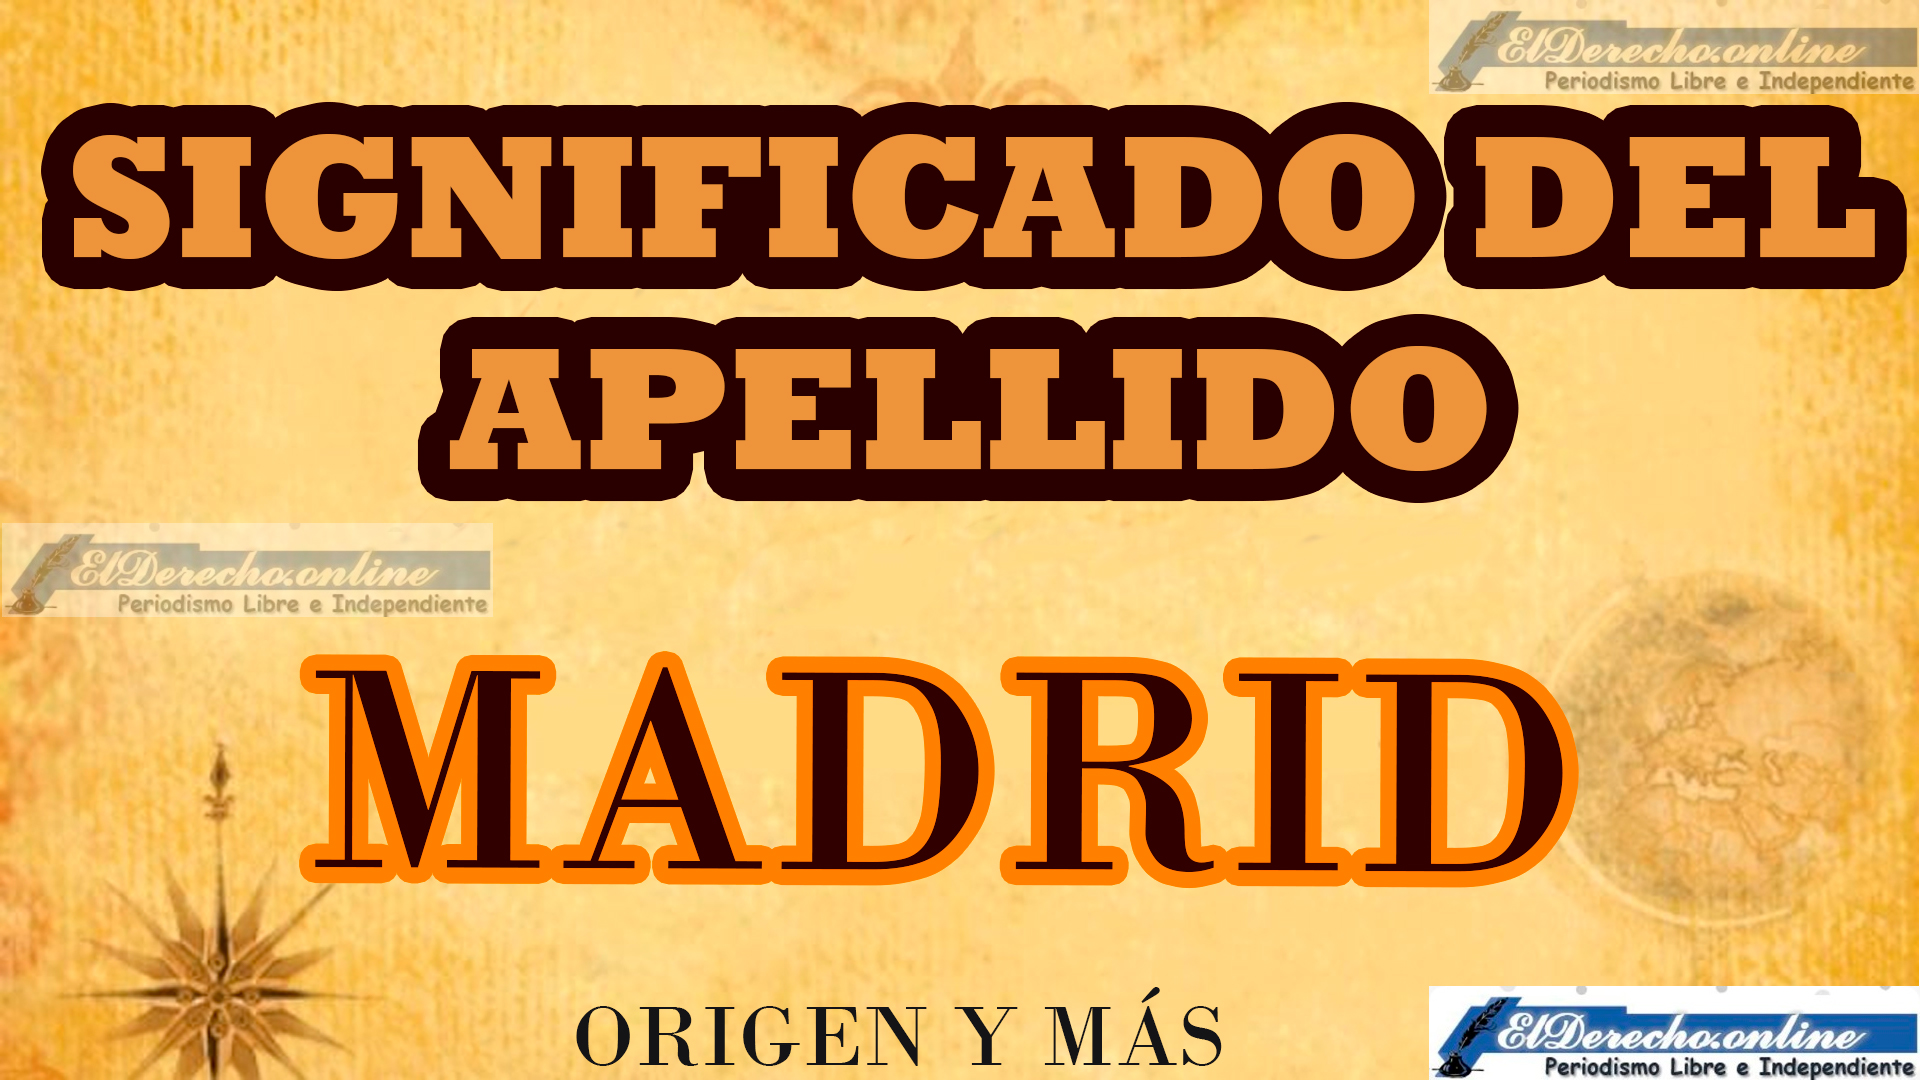 Significado del apellido Madrid, Origen y más